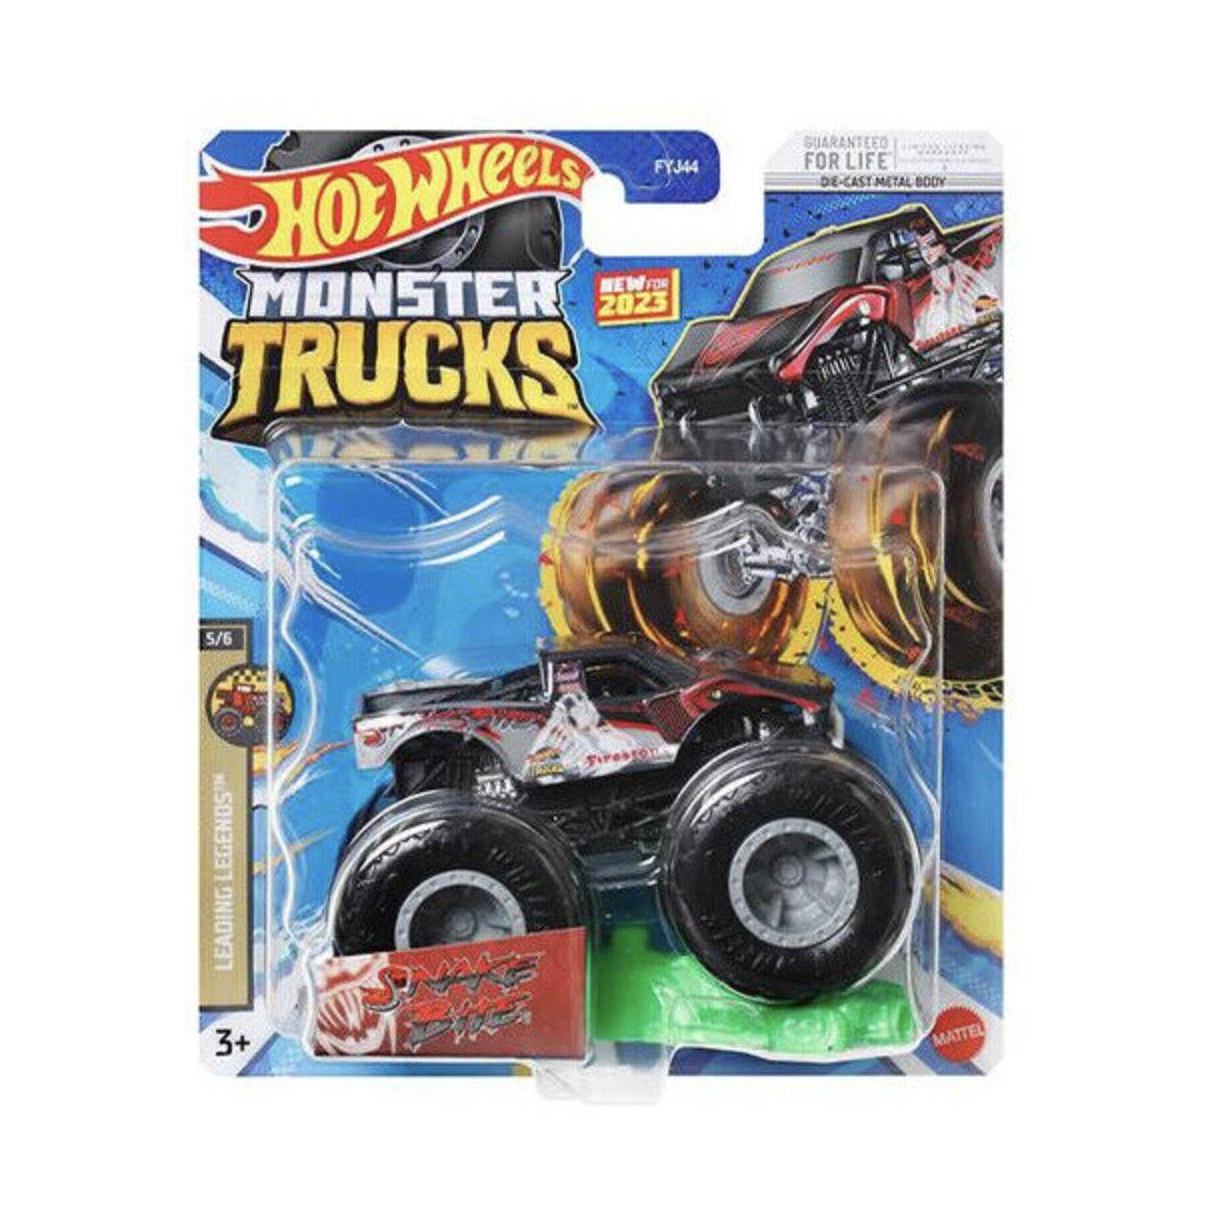 Hot Wheels Monster Trucks 1:64 Araba FYJ44-HLR91 | Toysall